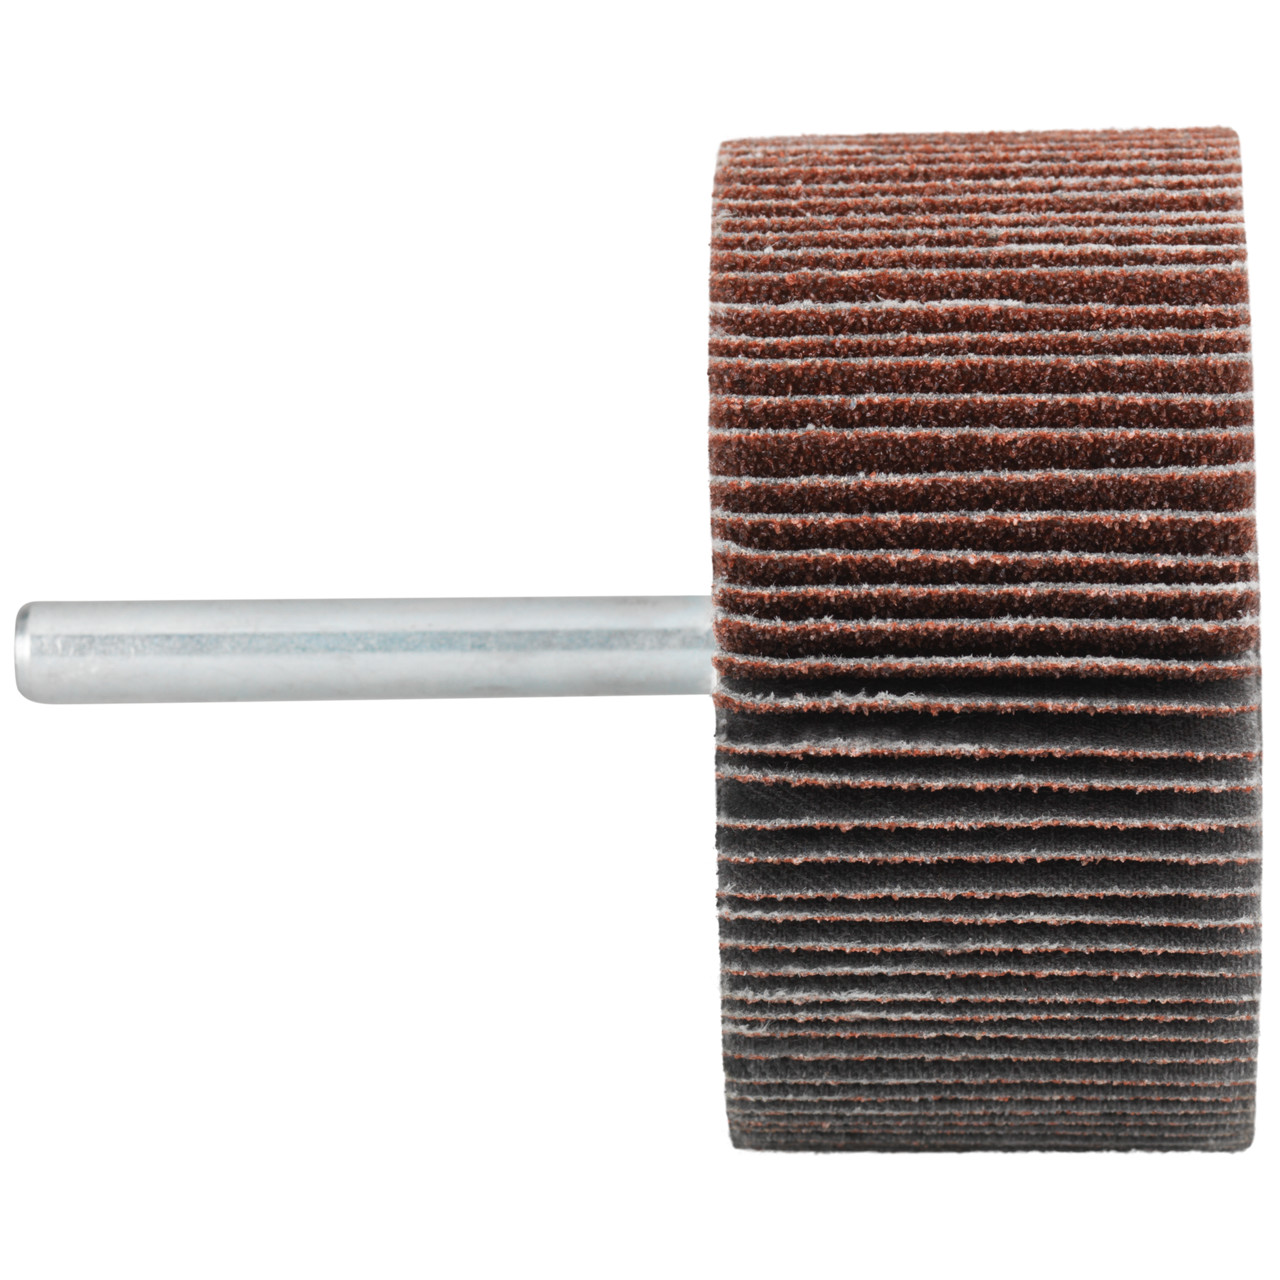 Tyrolit A-P01 C X Pennen DxD 50x30 Voor staal, roestvast staal en non-ferrometalen, P240, vorm: 52LA, Art. 433020